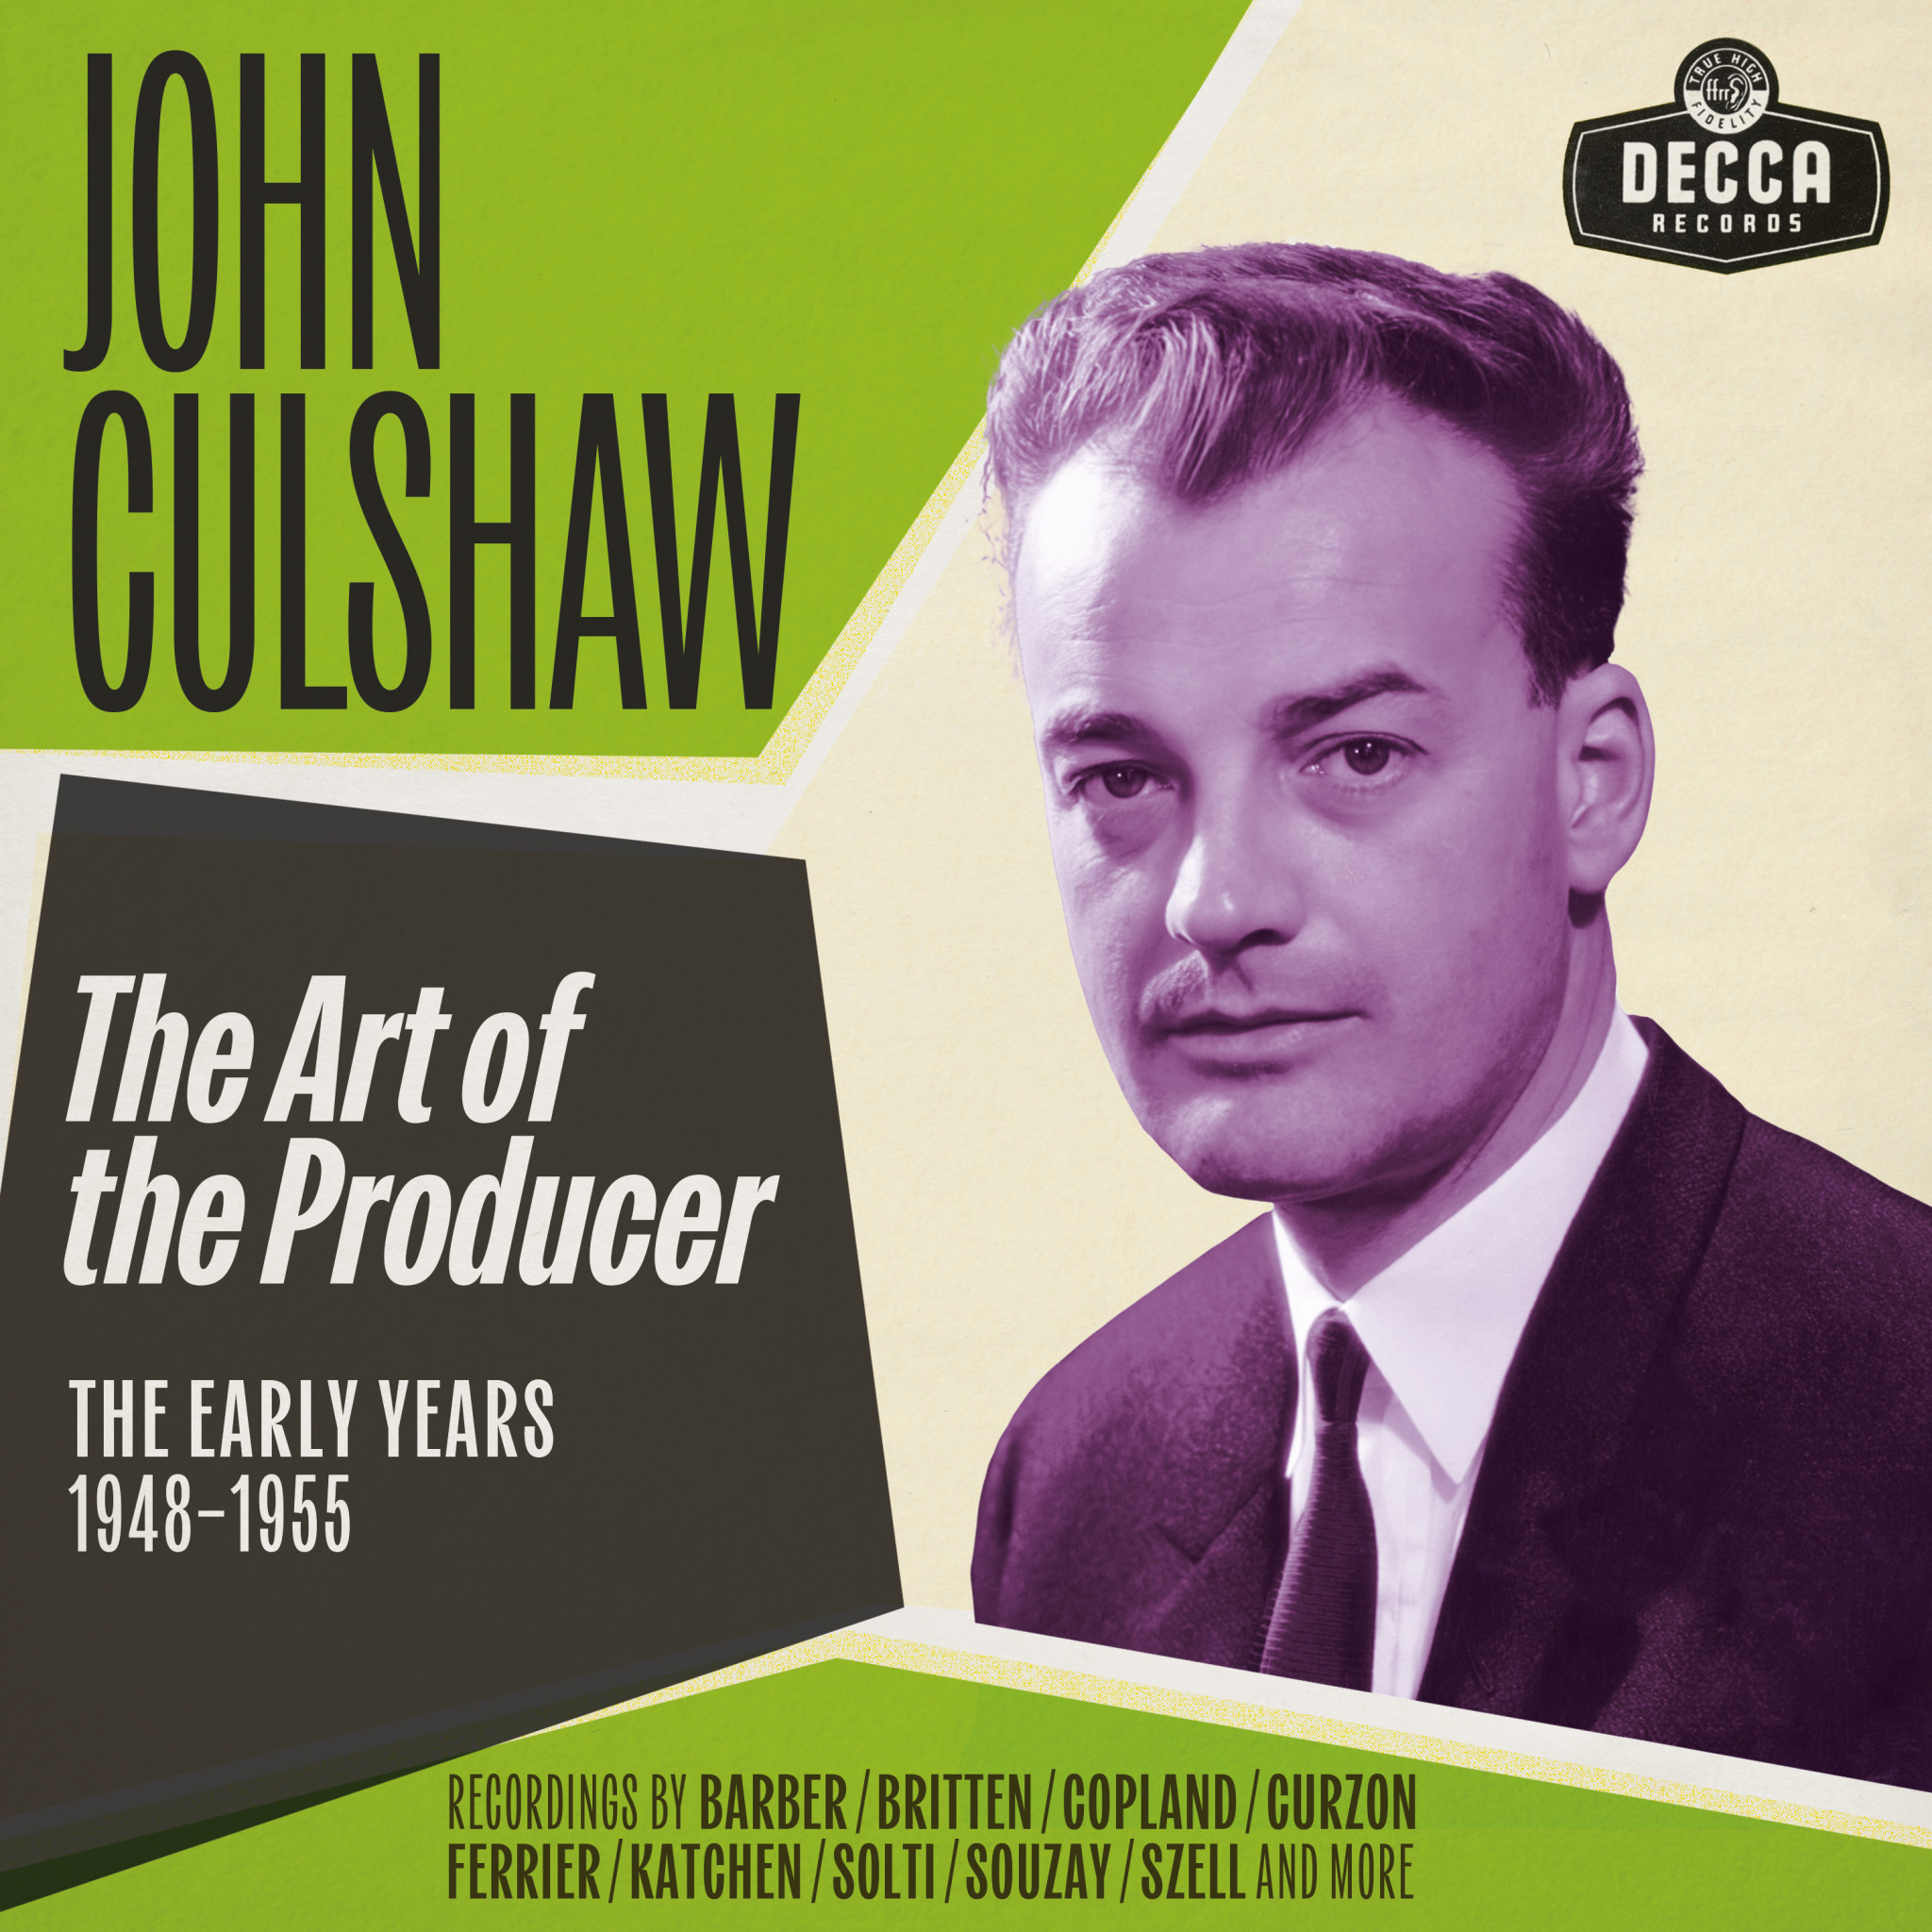 JOHN CULSHAW - THE ART OF THE PRODUCER